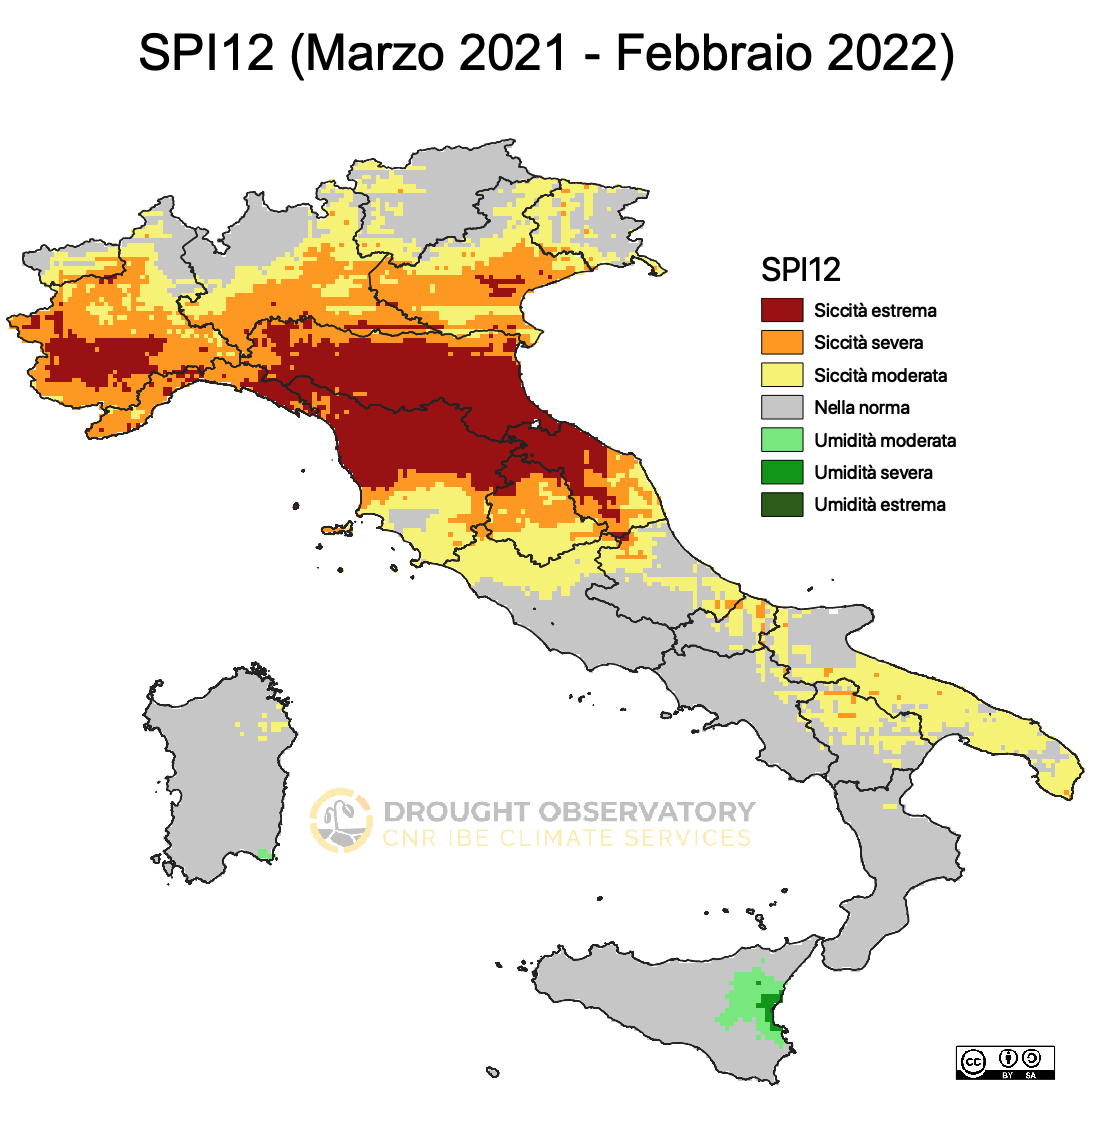 Pluviometria in Toscana (foto del Drought Observatory). https://drought.climateservices.it/bollettino/situazione-siccita-febbraio-2022/